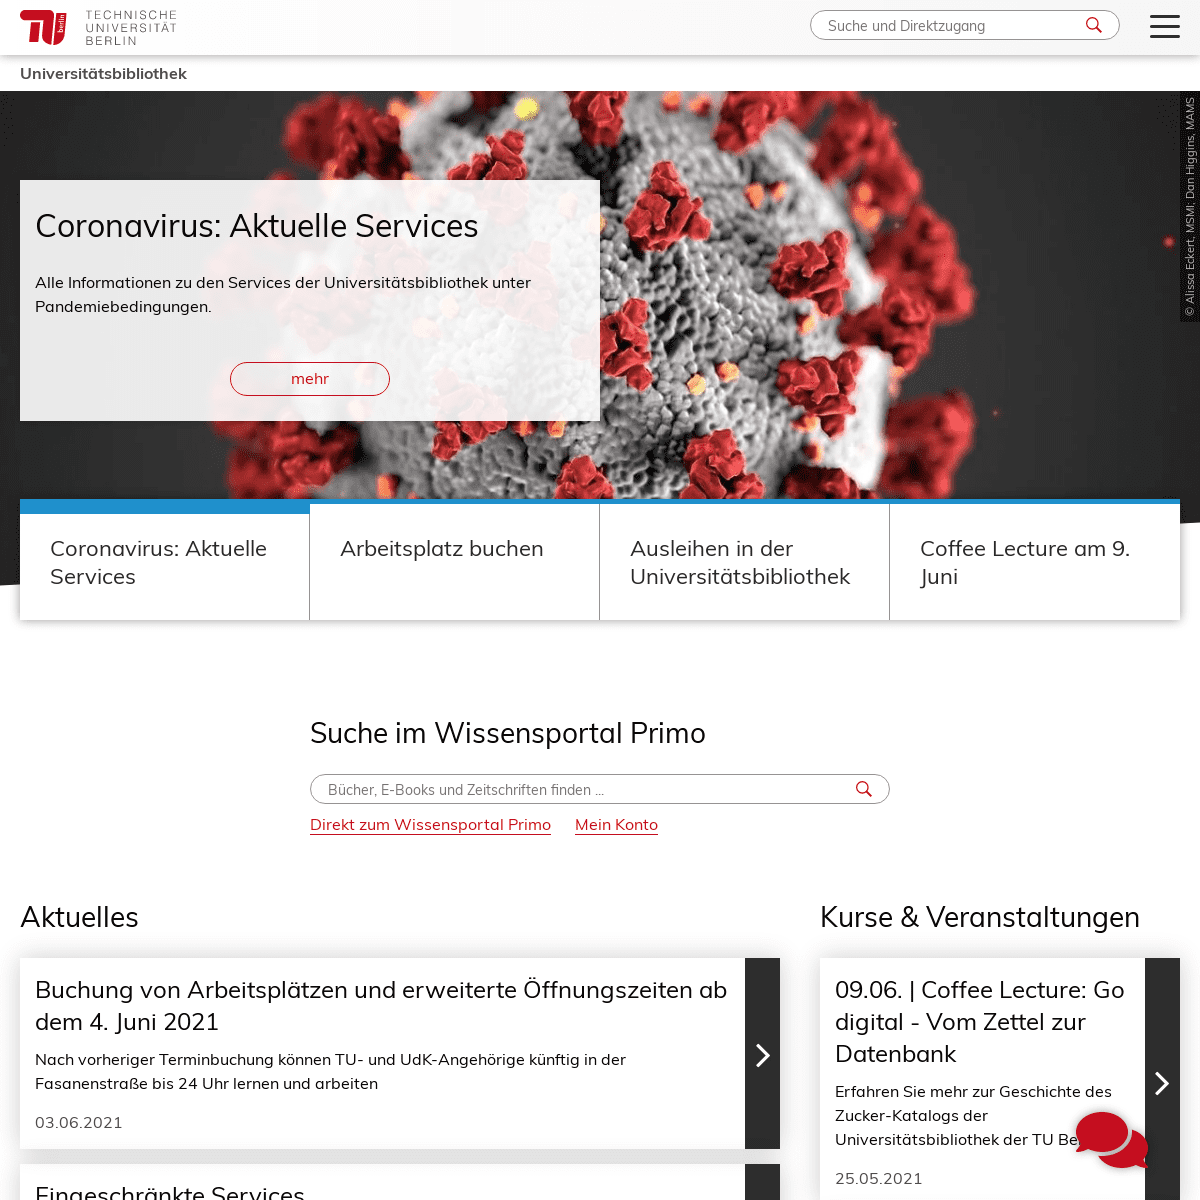 A complete backup of https://www.ub.tu-berlin.de